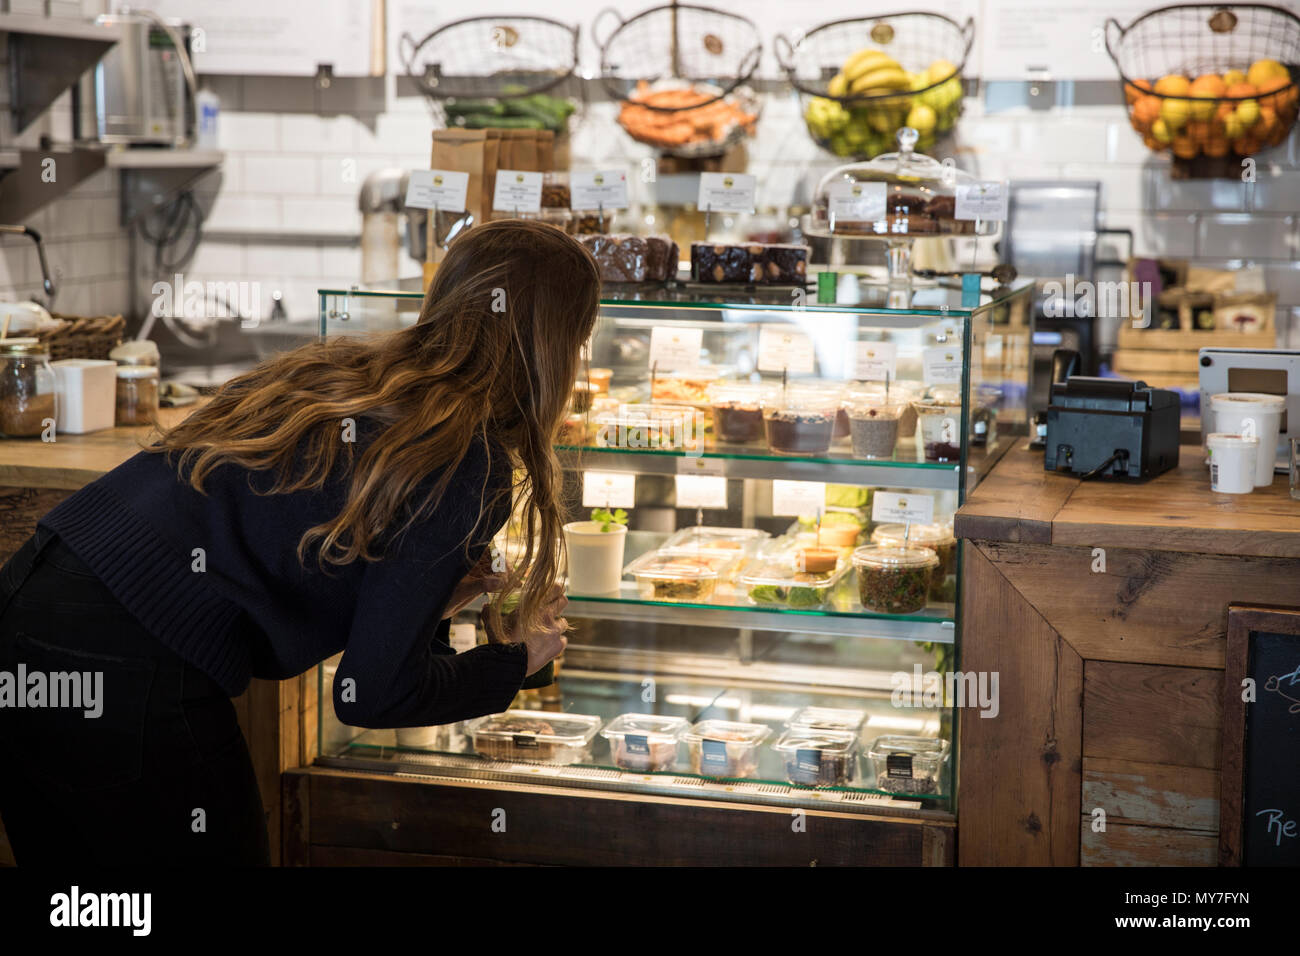 Jeune femme à la recherche de nourriture fraîche display cabinet in cafe Banque D'Images